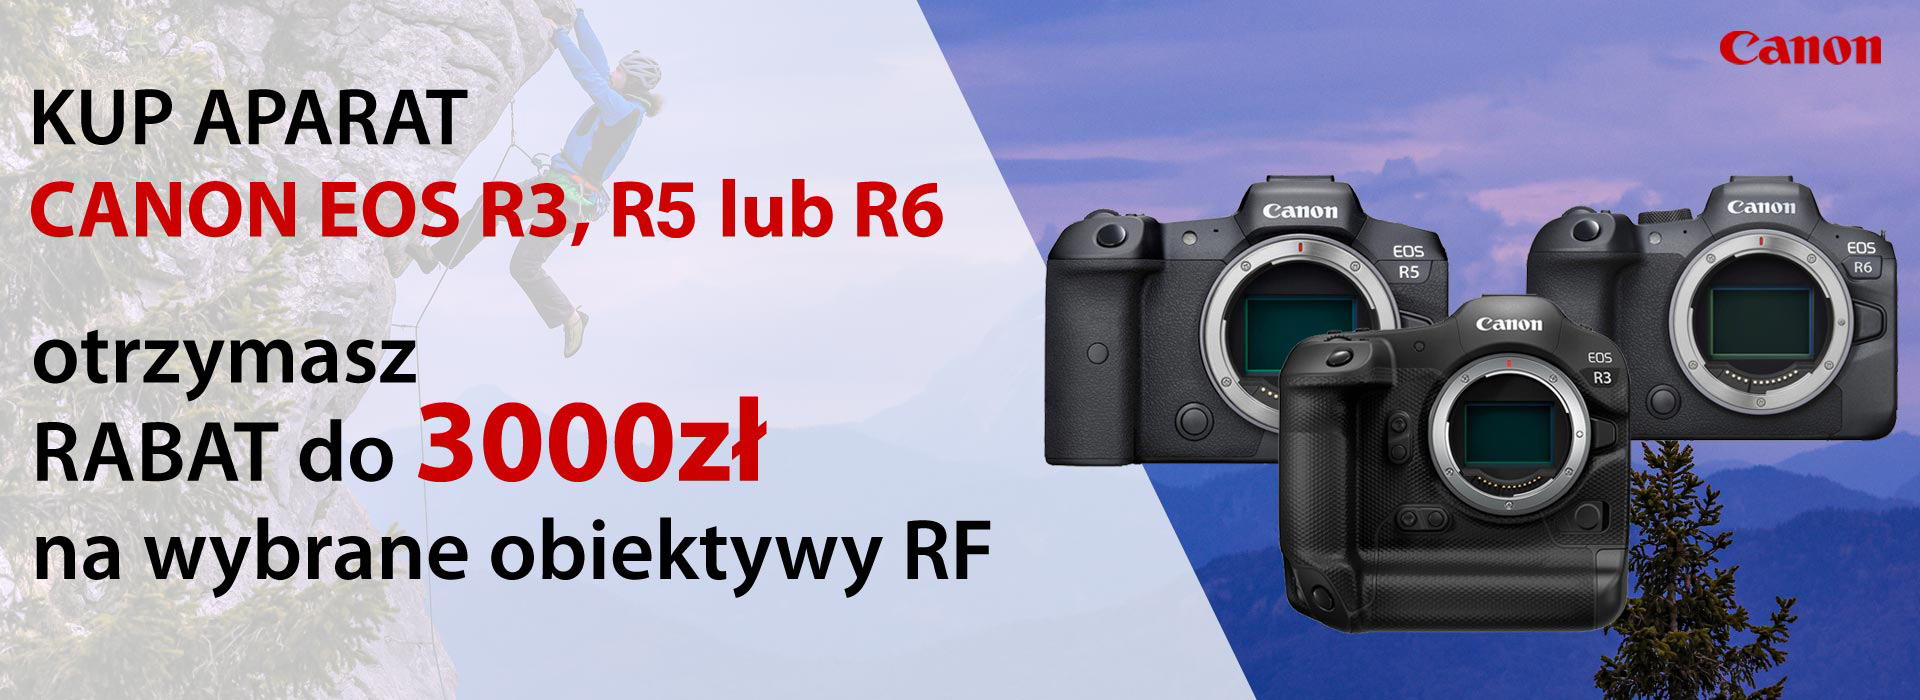  Rabat do 3000zł na obiektyw Canon RF przy zakupie z wybranym aparatem Canon EOS R